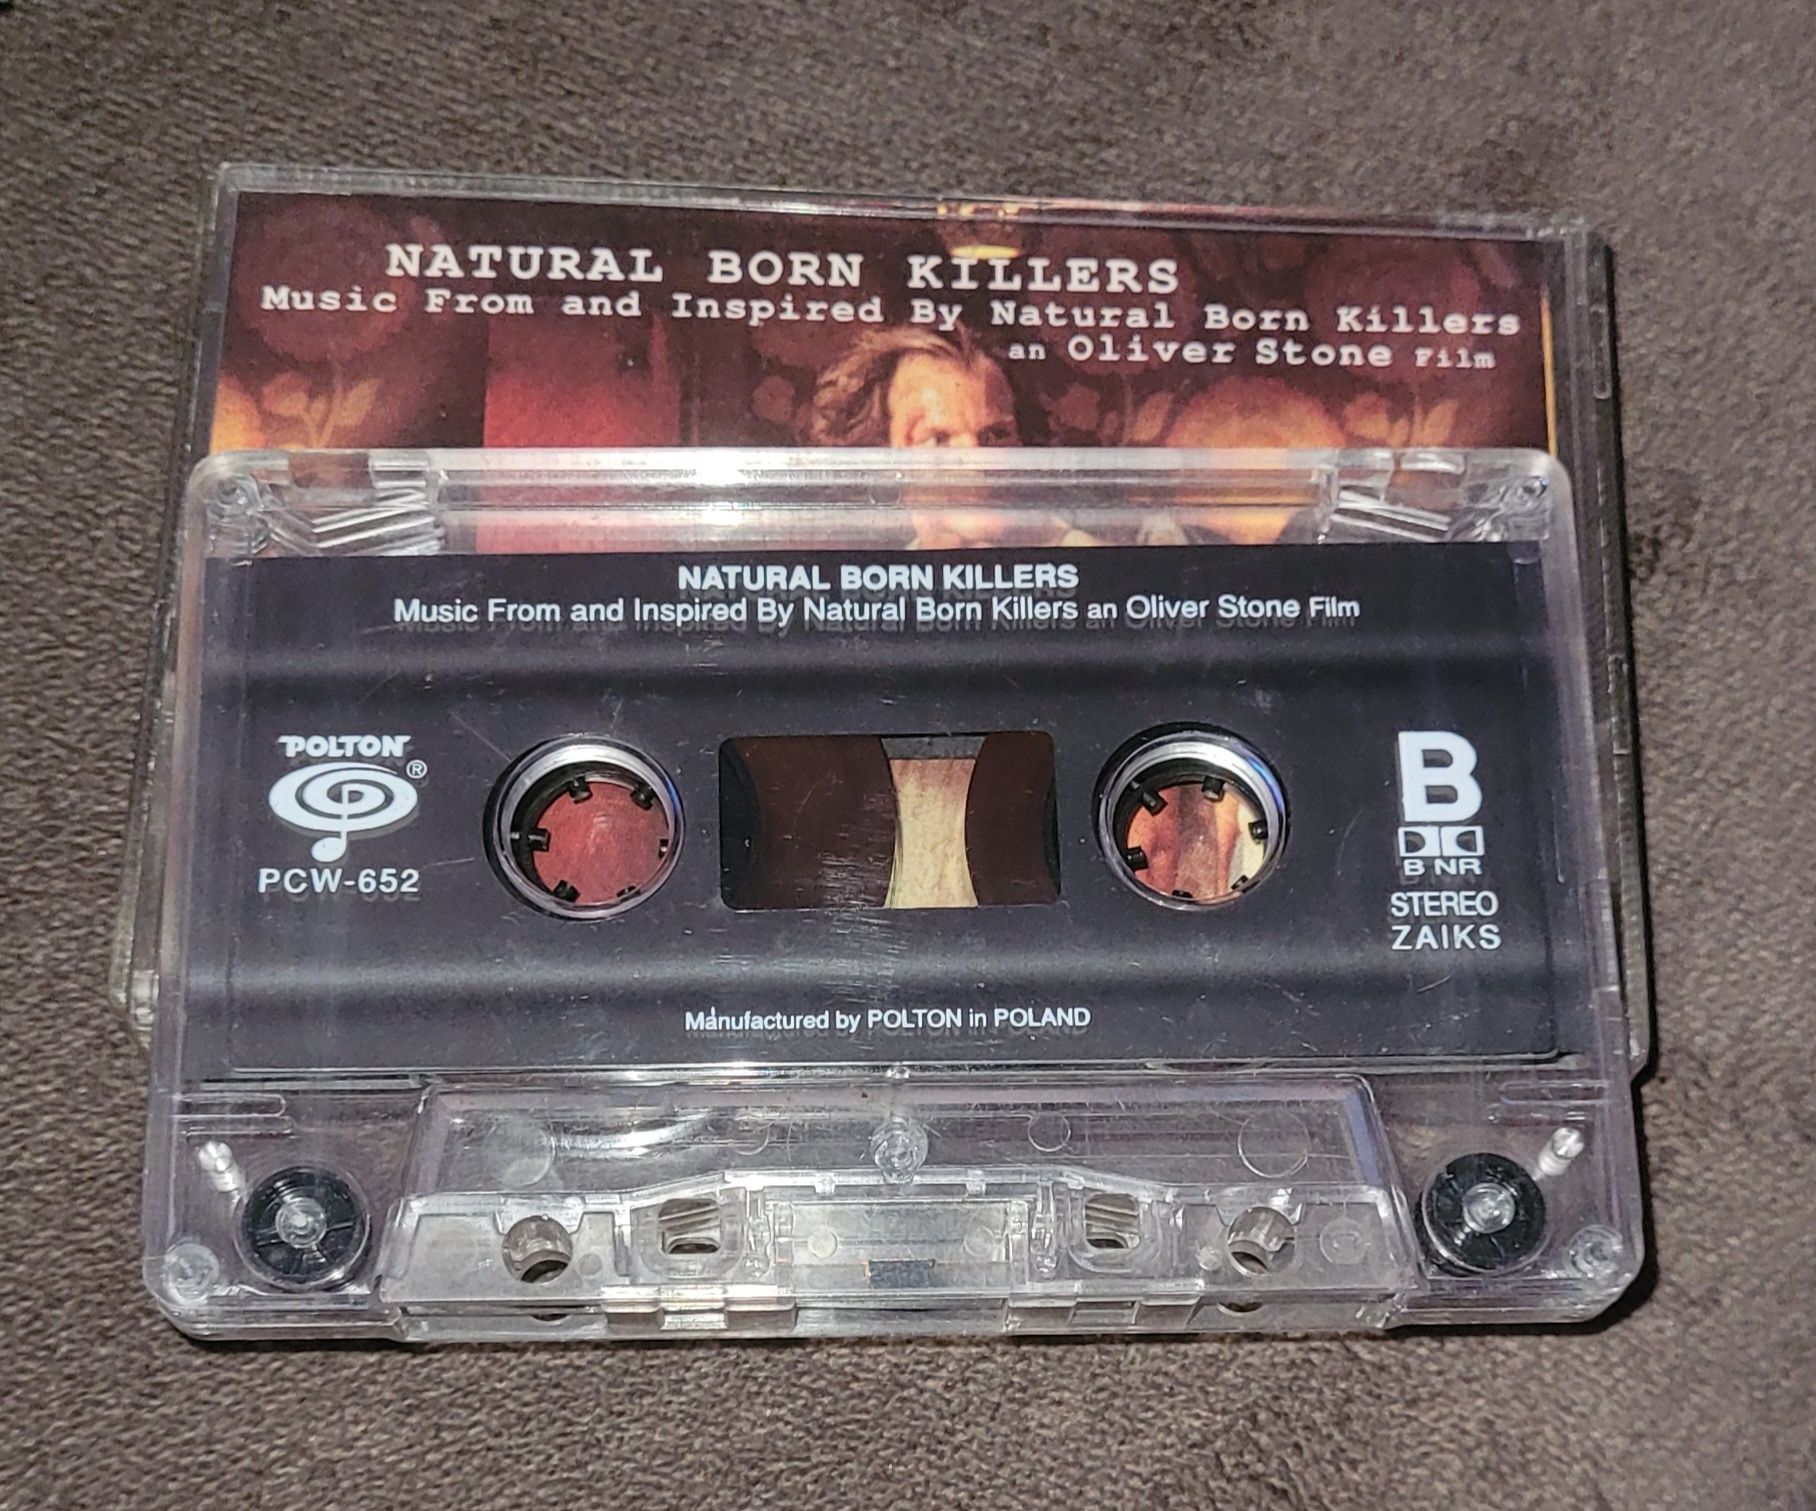 Natural Born Killers (A Soundtrack For An Oliver Stone Film), kaseta